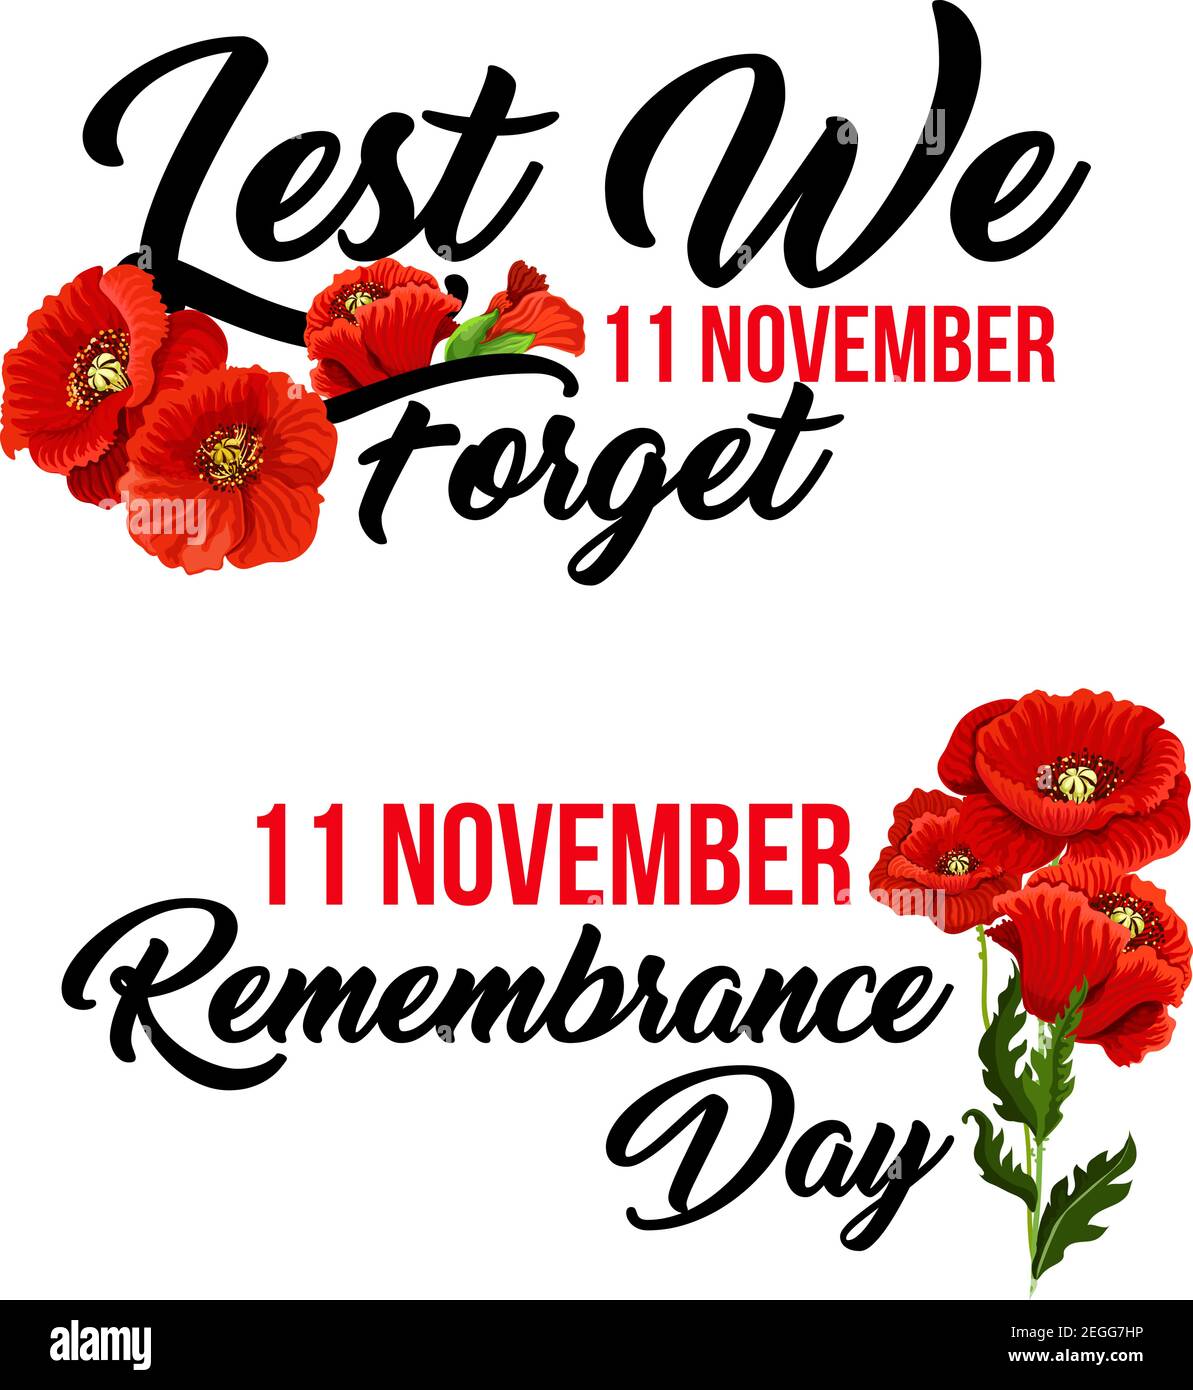 Remembrance Day damit wir Mohnblumen Ikone für 11 November vergessen Anzac australischen, kanadischen und Commonwealth Waffenstillstand und Freiheit Gedenken. Vec Stock Vektor